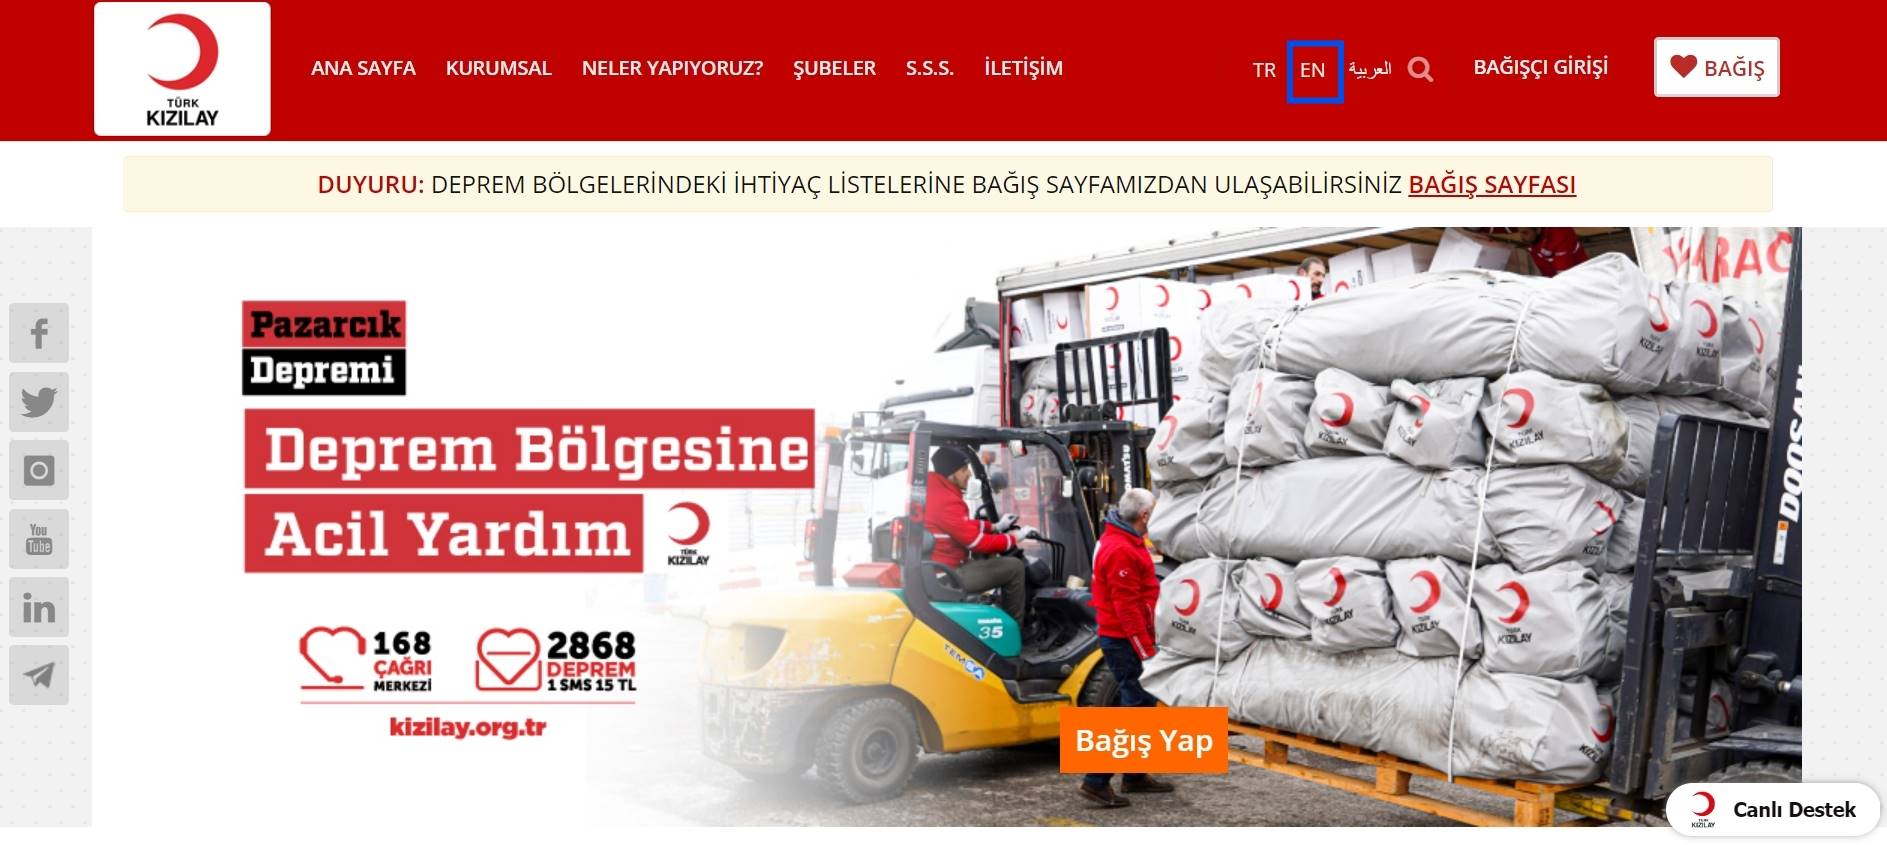 土耳其紅新月會捐款步驟